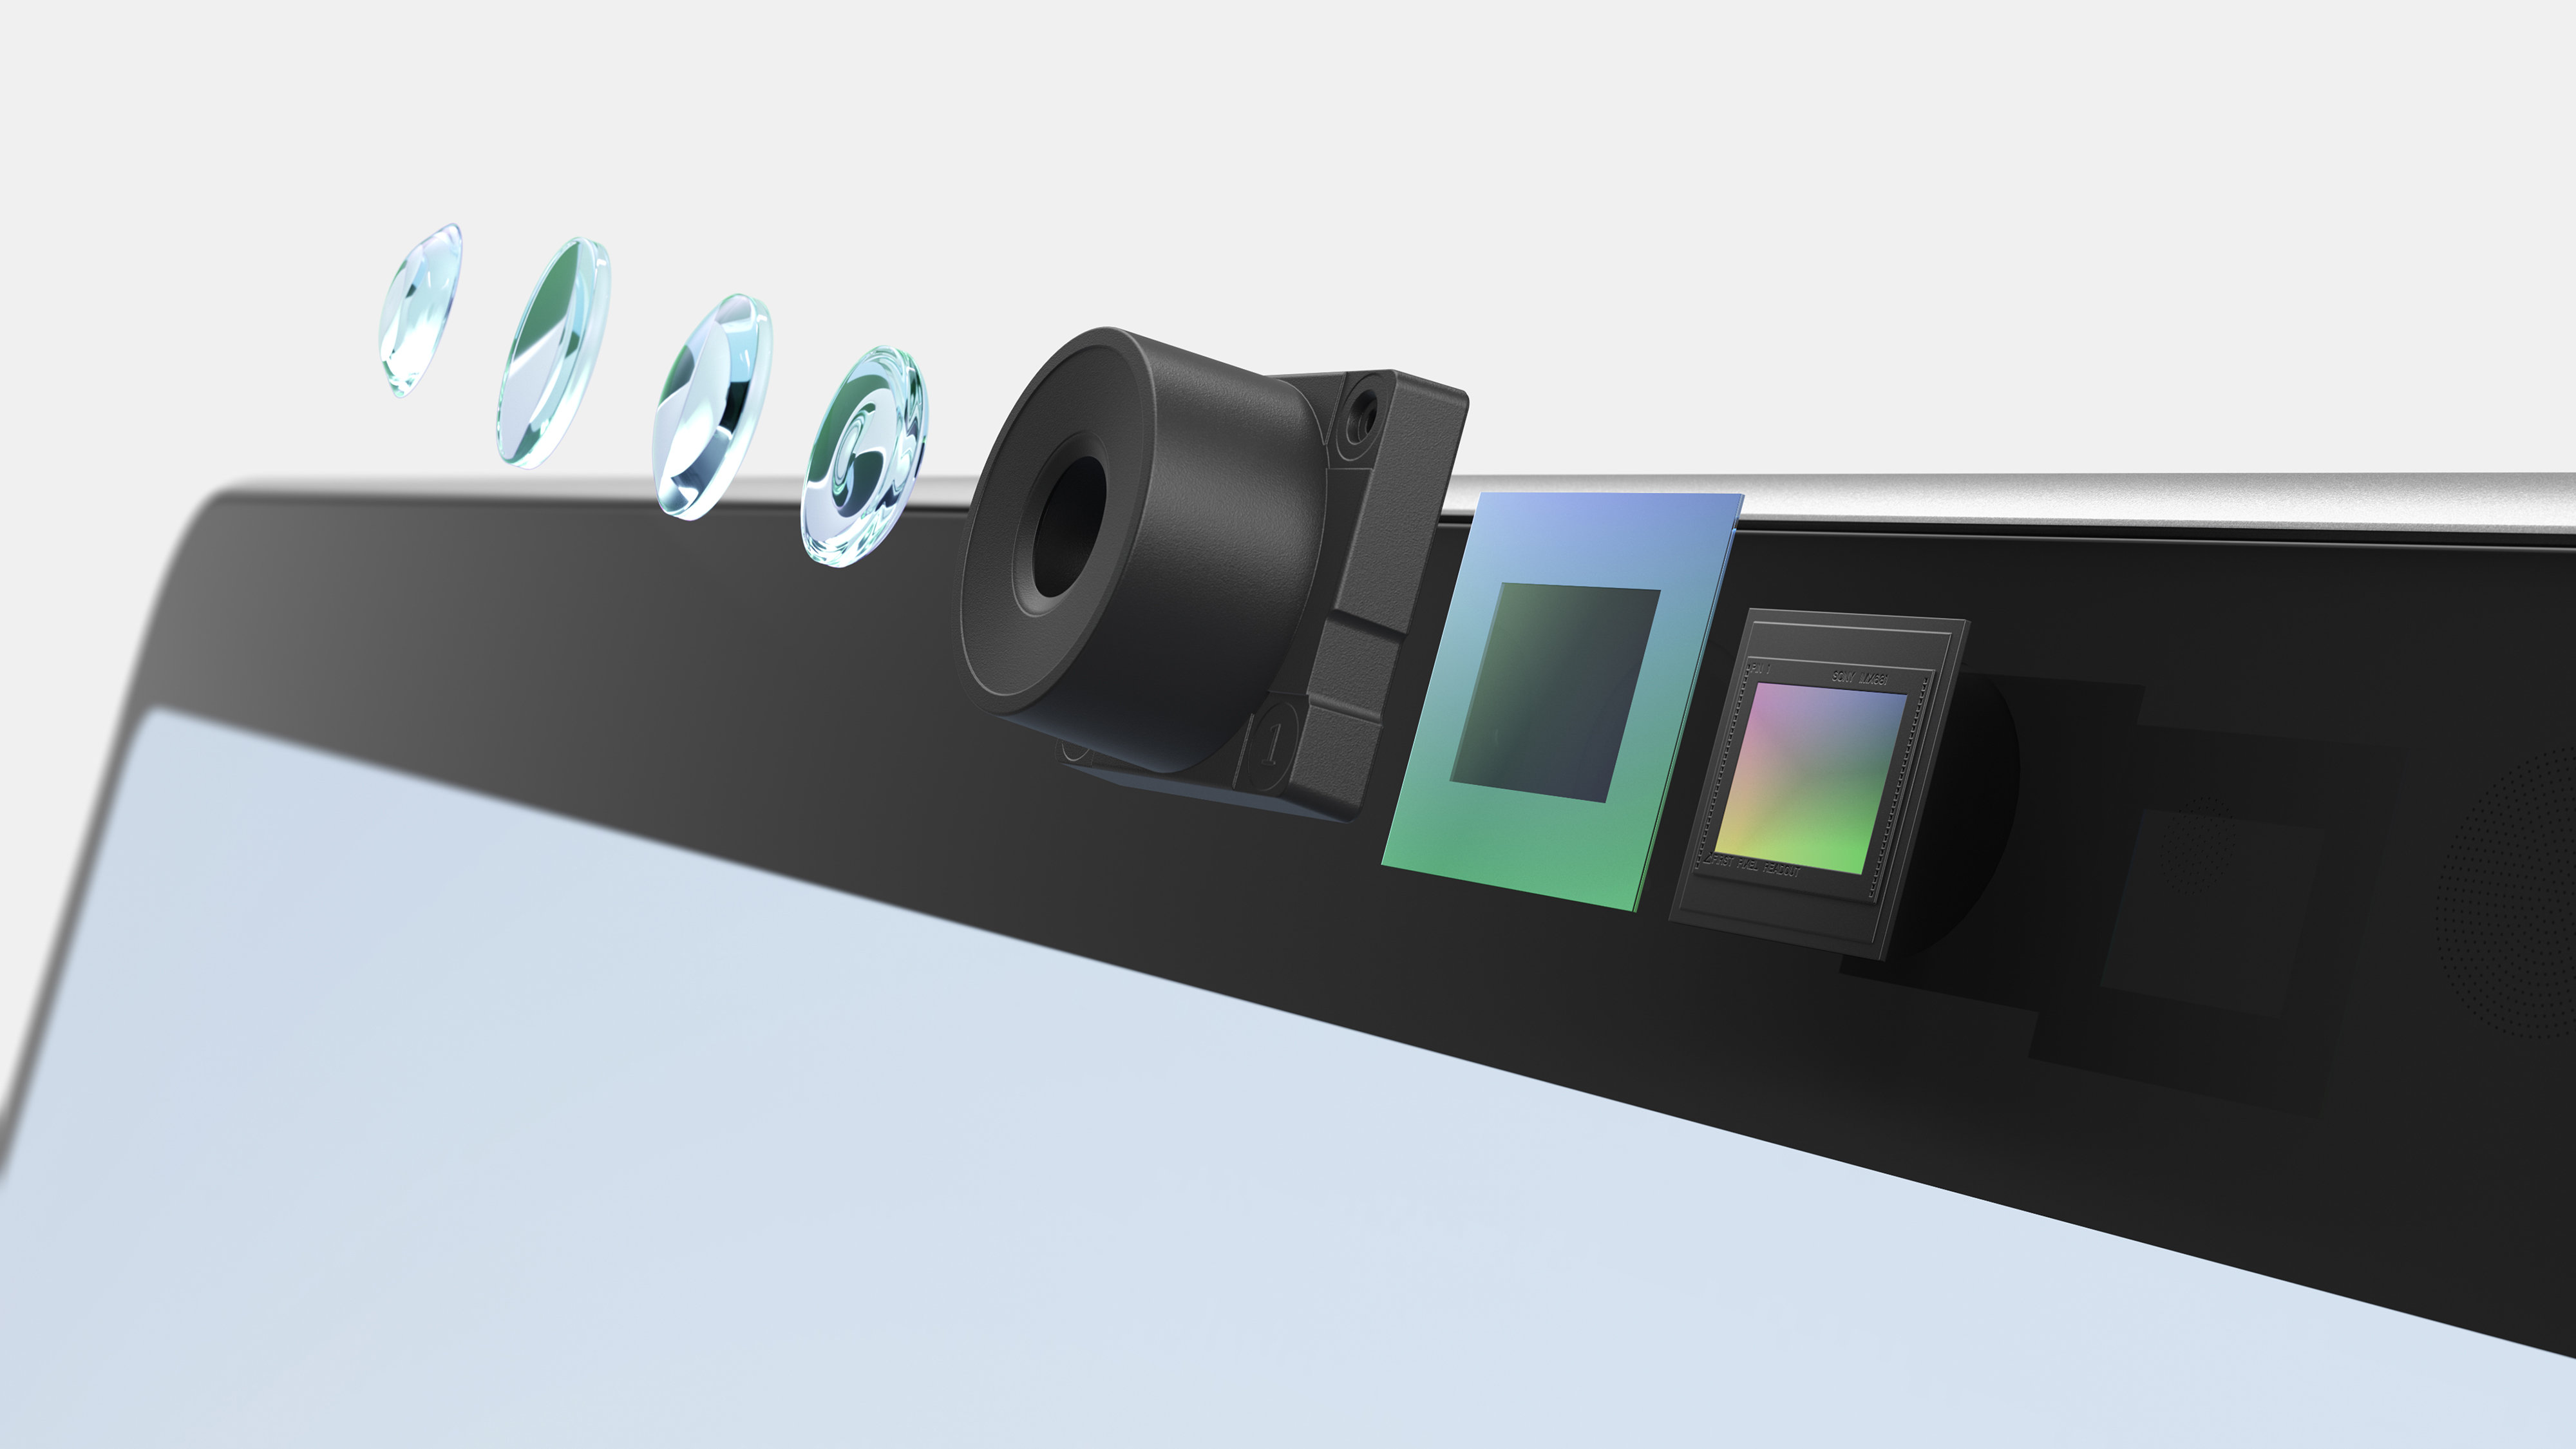 展示 Surface Pro 10 整合式相機不同零件的分裂式檢視畫面